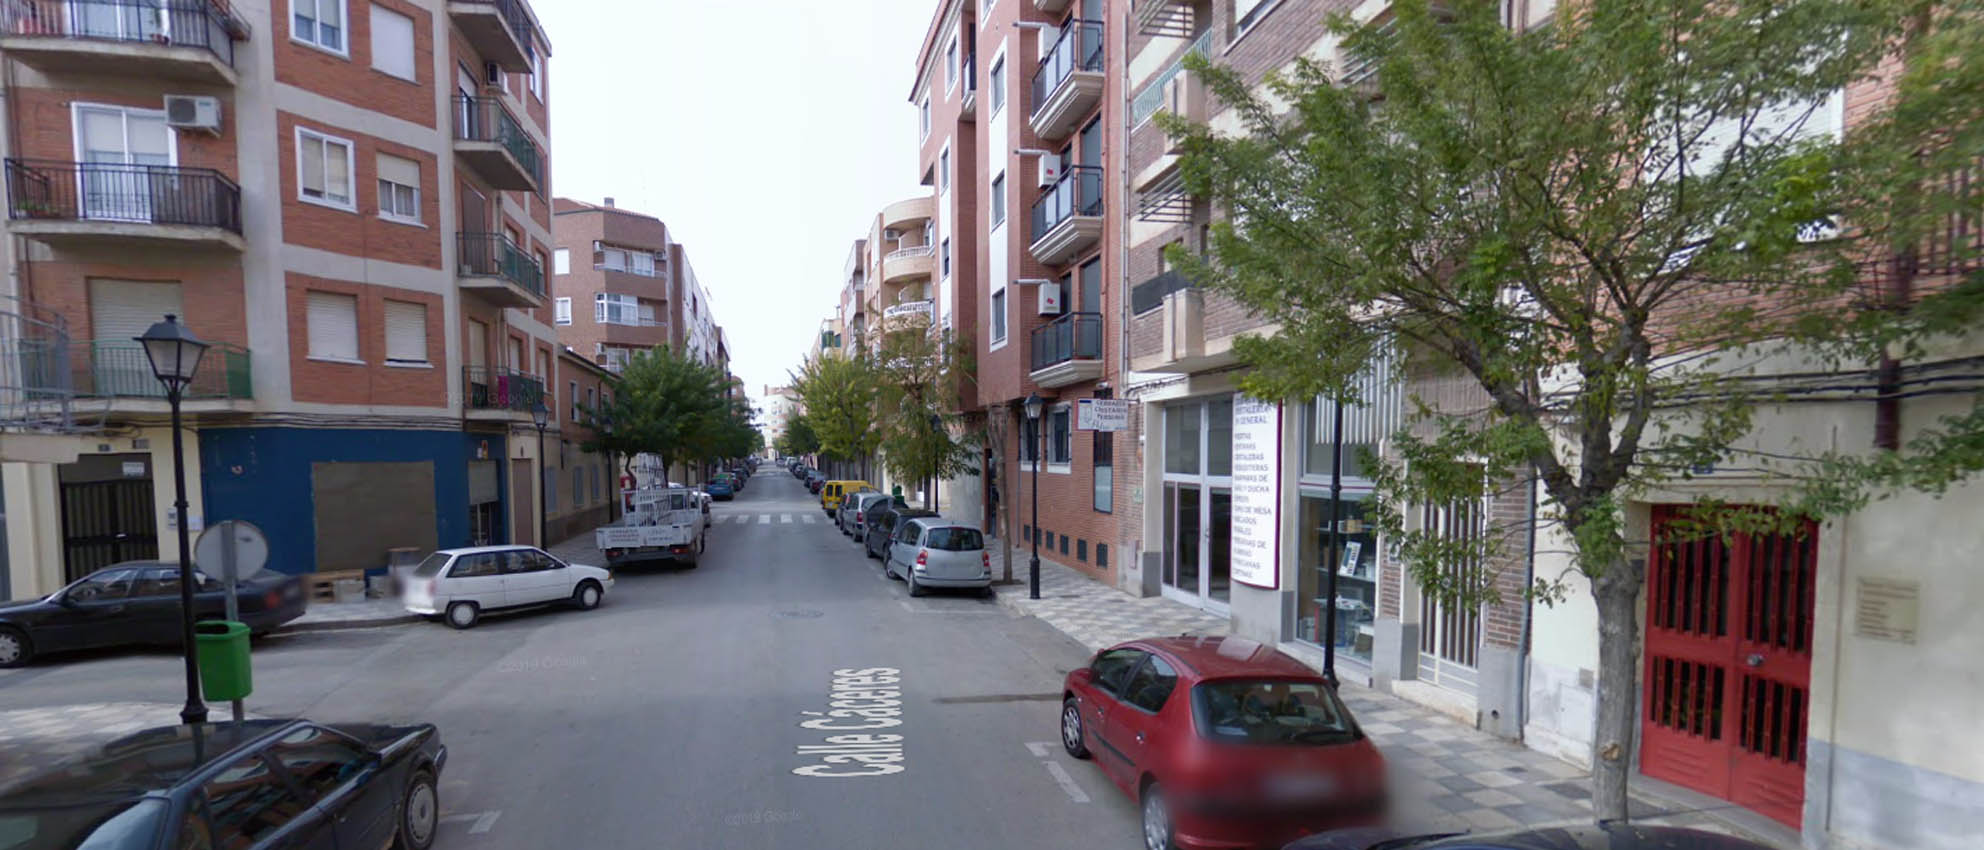 Calle Cáceres de Albacete a la altura del número 20, donde se habría producido los hechos.